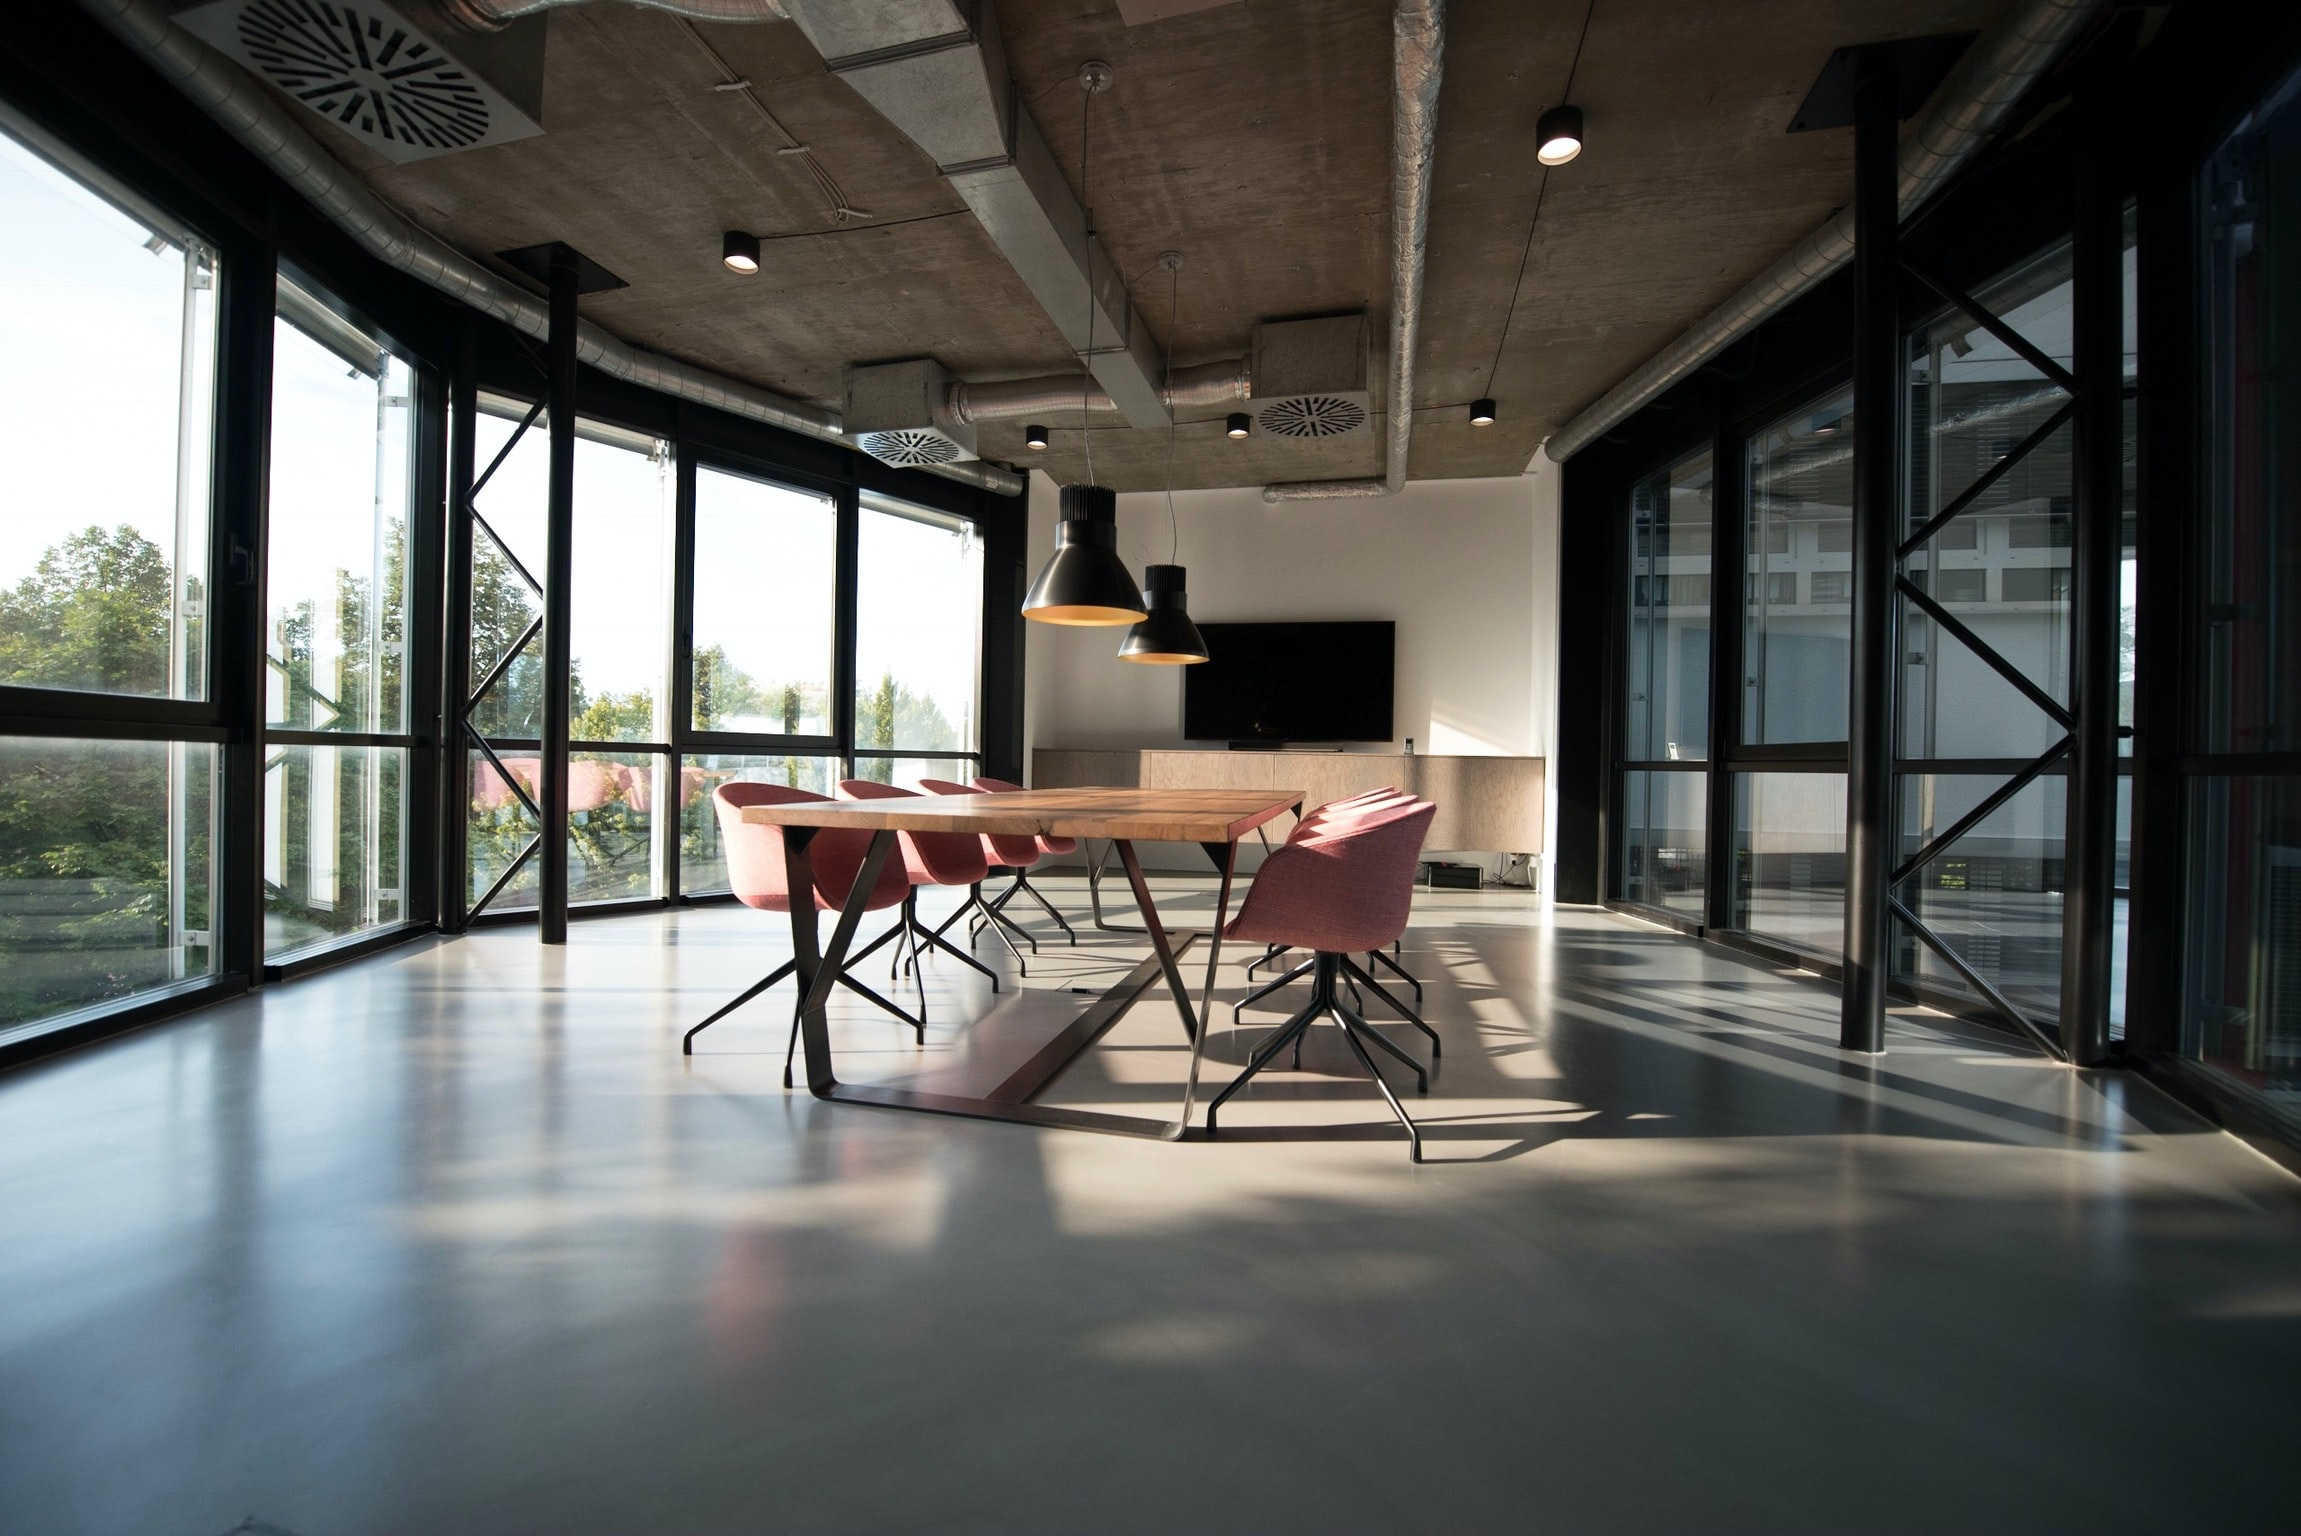 Pausenräume im büro: Wann ist die Nutzung eines Pausenraums arbeitsrechtlich vorgeschrieben?